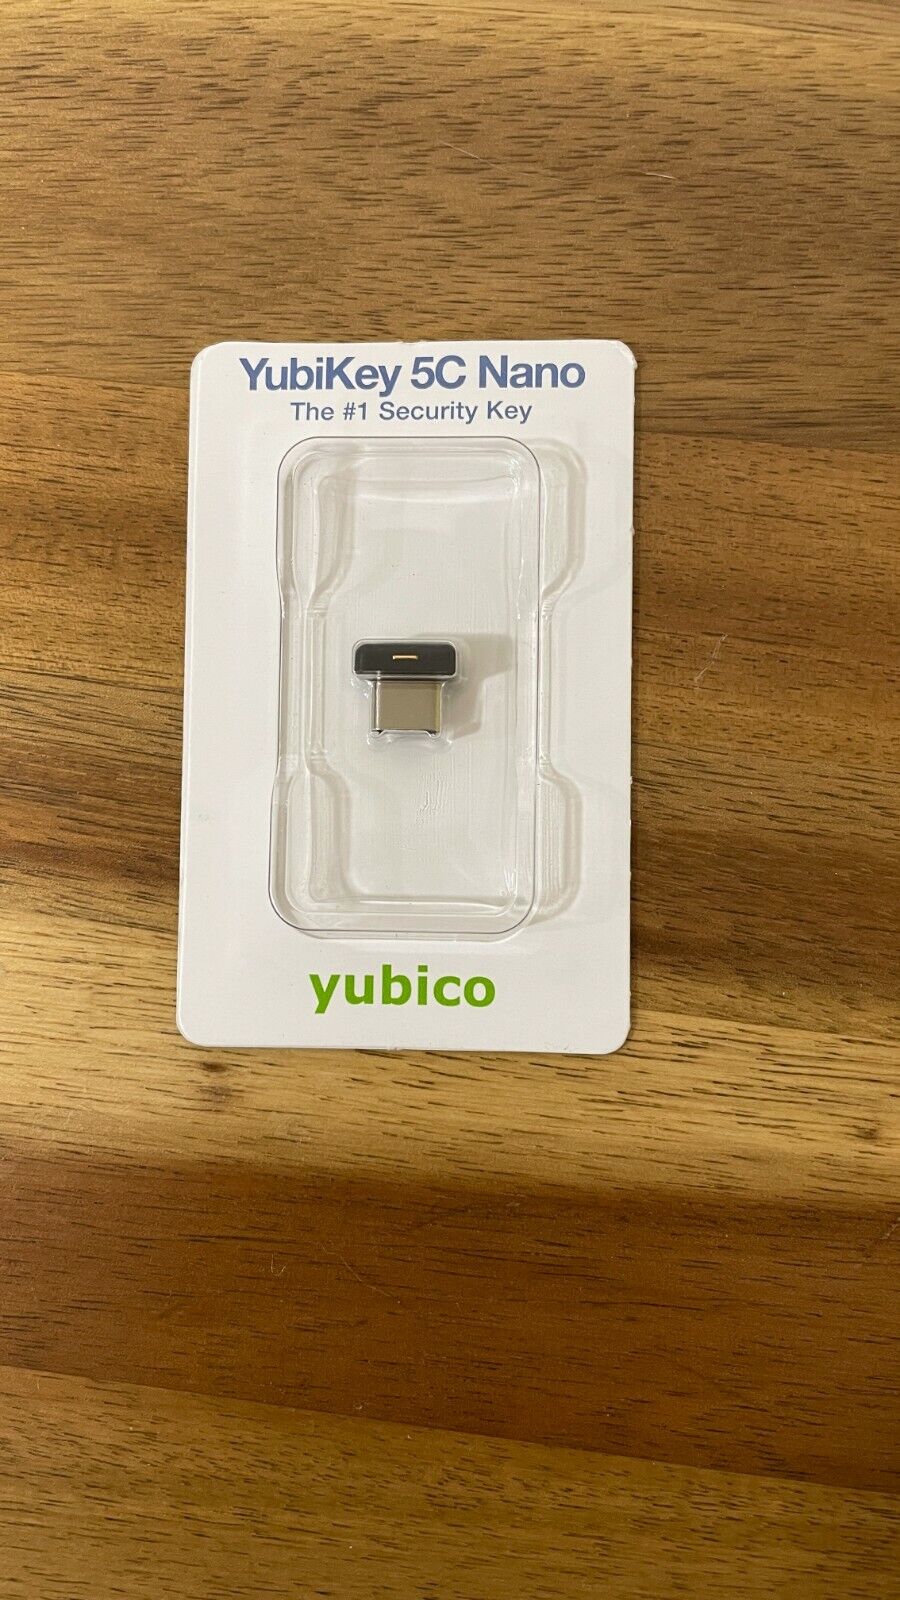 YubiKey 5C Nano - new